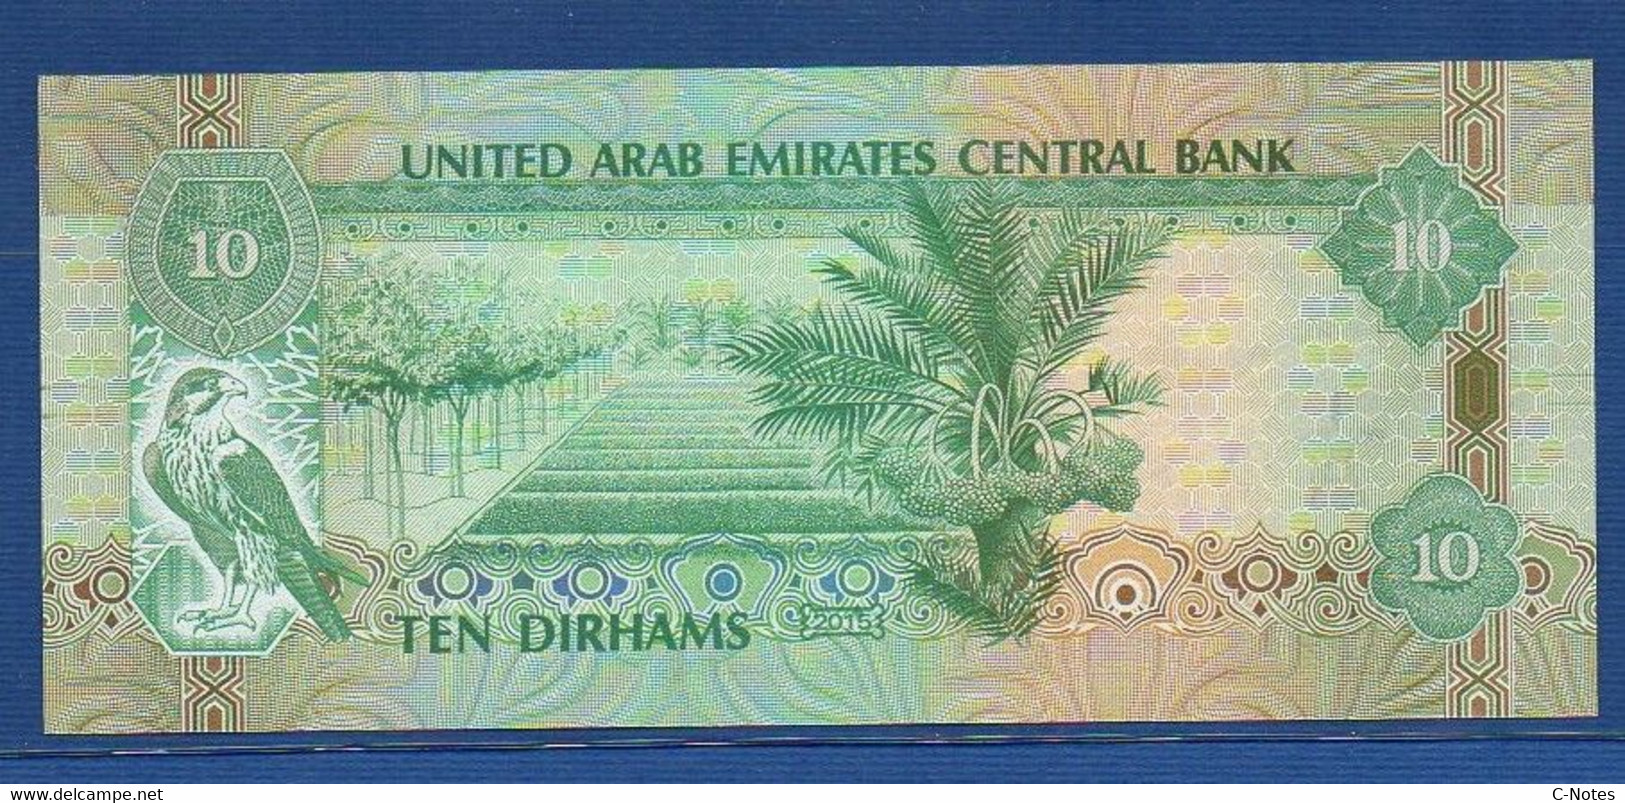 UNITED ARAB EMIRATES - P.27d – 10 DIRHAMS 2015 UNC Serie 158831182 - Emiratos Arabes Unidos